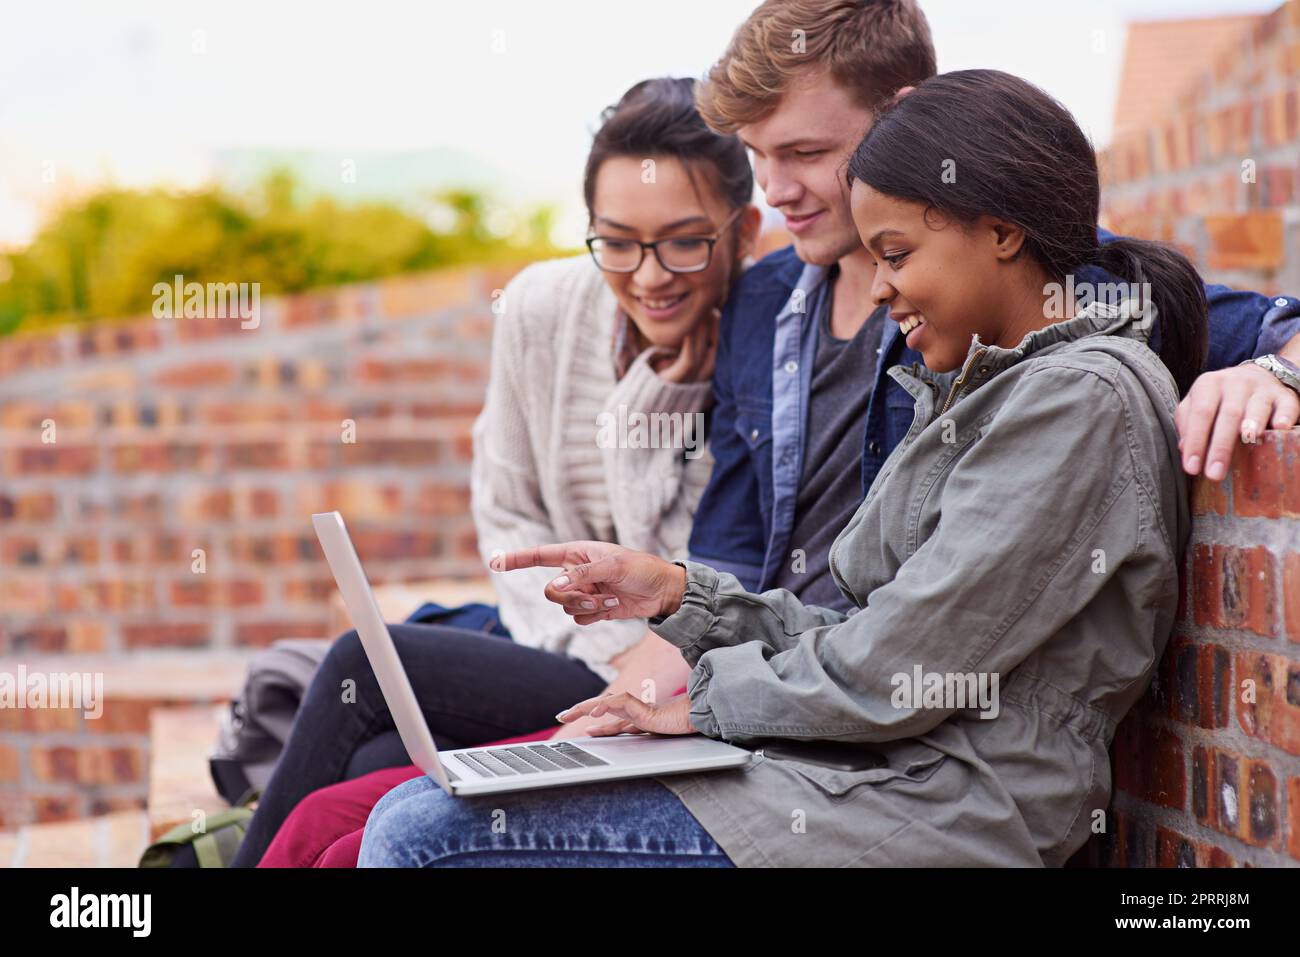 Imparare è piacevole. Un gruppo di studenti seduti fuori mentre si trovano nel campus. Foto Stock